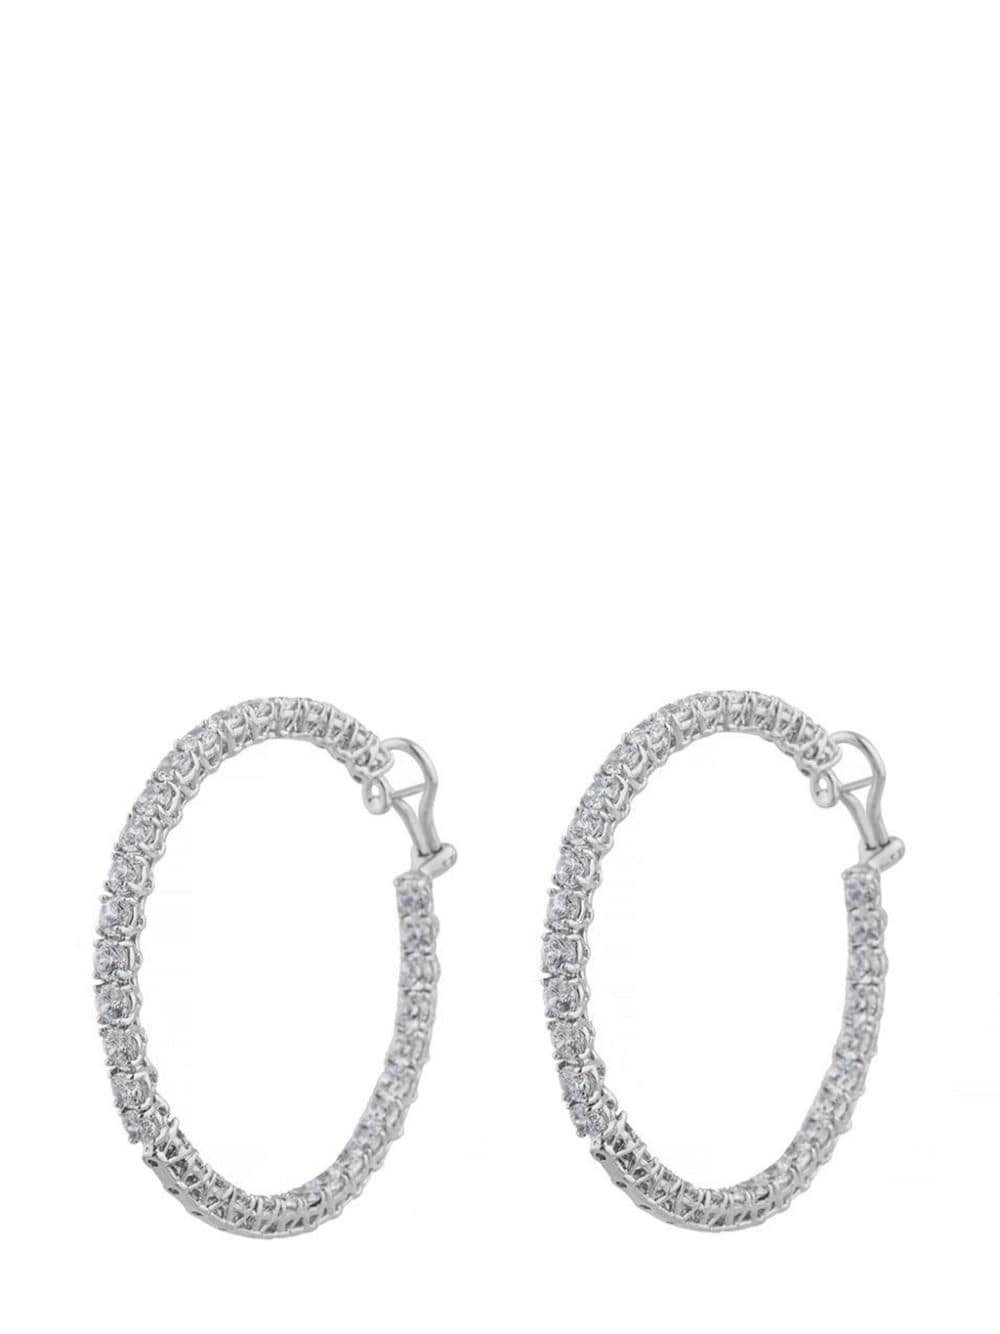 Fantasia By Deserio Embellished Hoop Earrings In Metallic